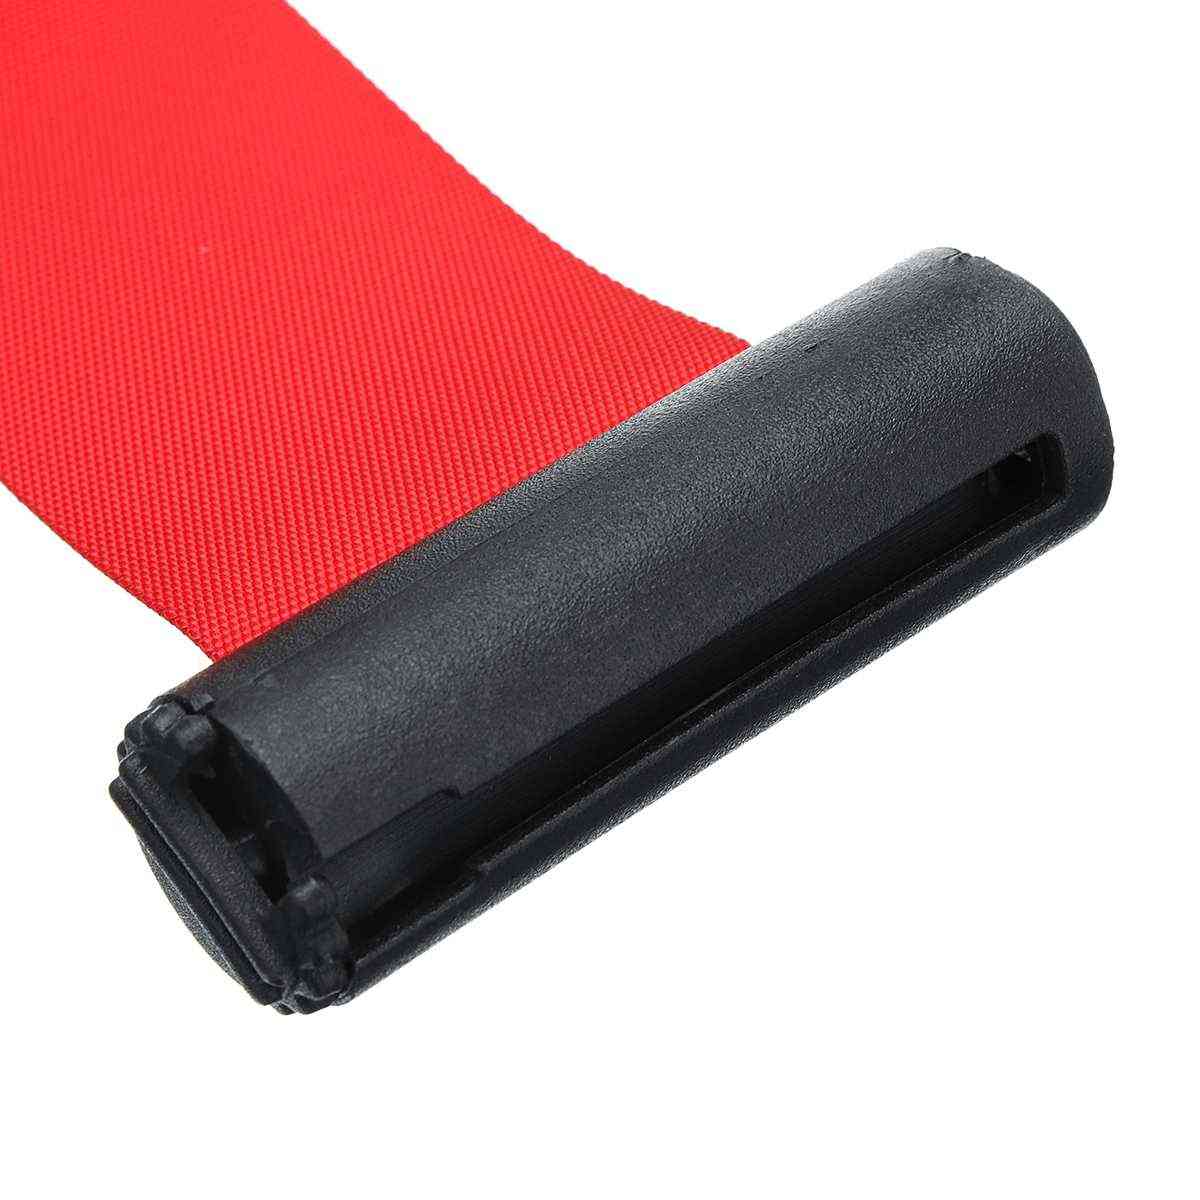 Nastro retrattile barriera sportiva da esterno montaggio a parete montante coda cintura rossa